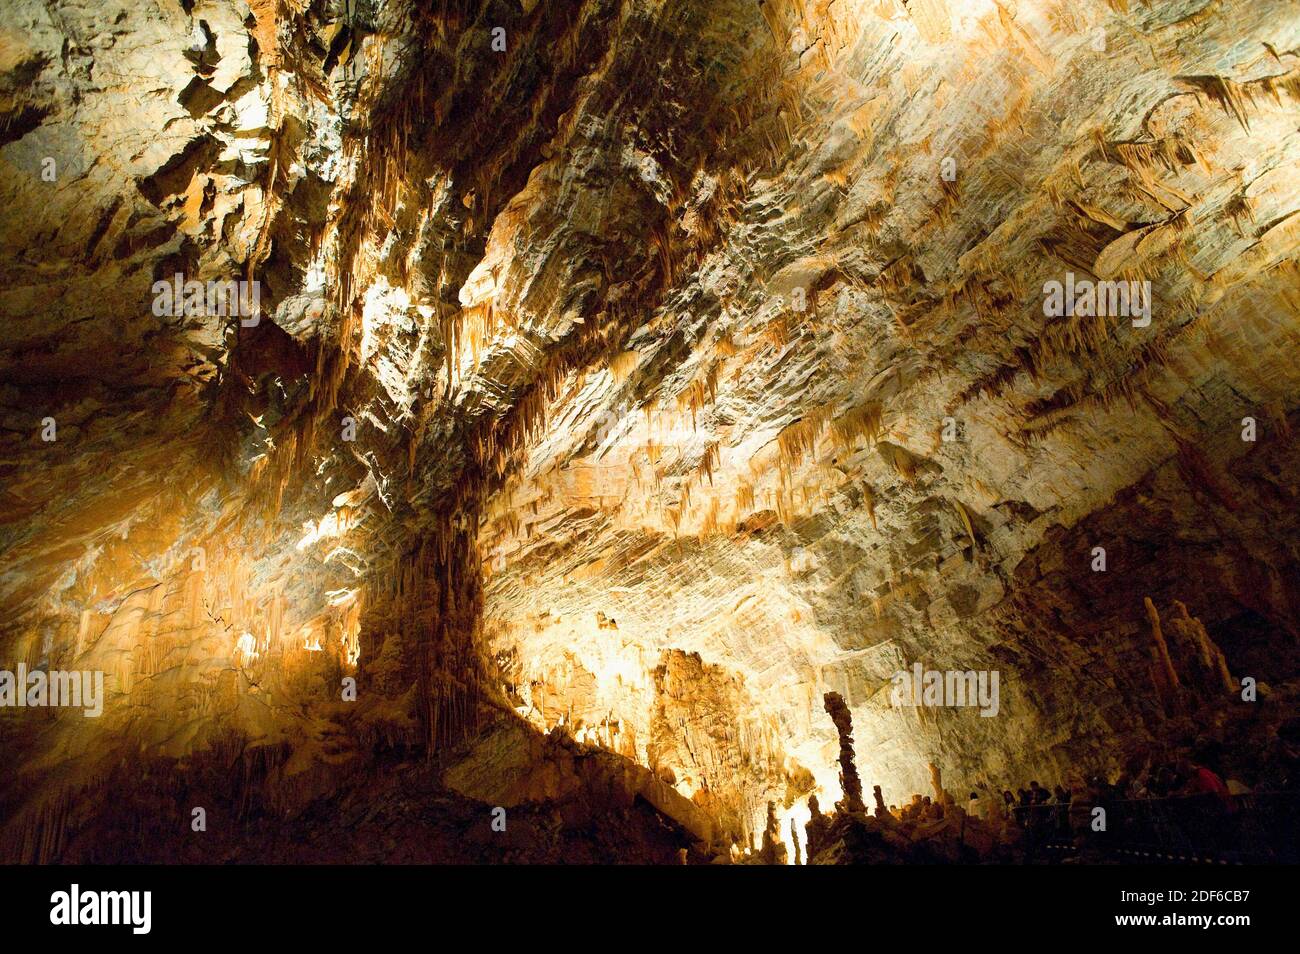 Gouffre géant de Cabrespine. Grotte avec stalactites et stalagmites. Aude, France. Banque D'Images